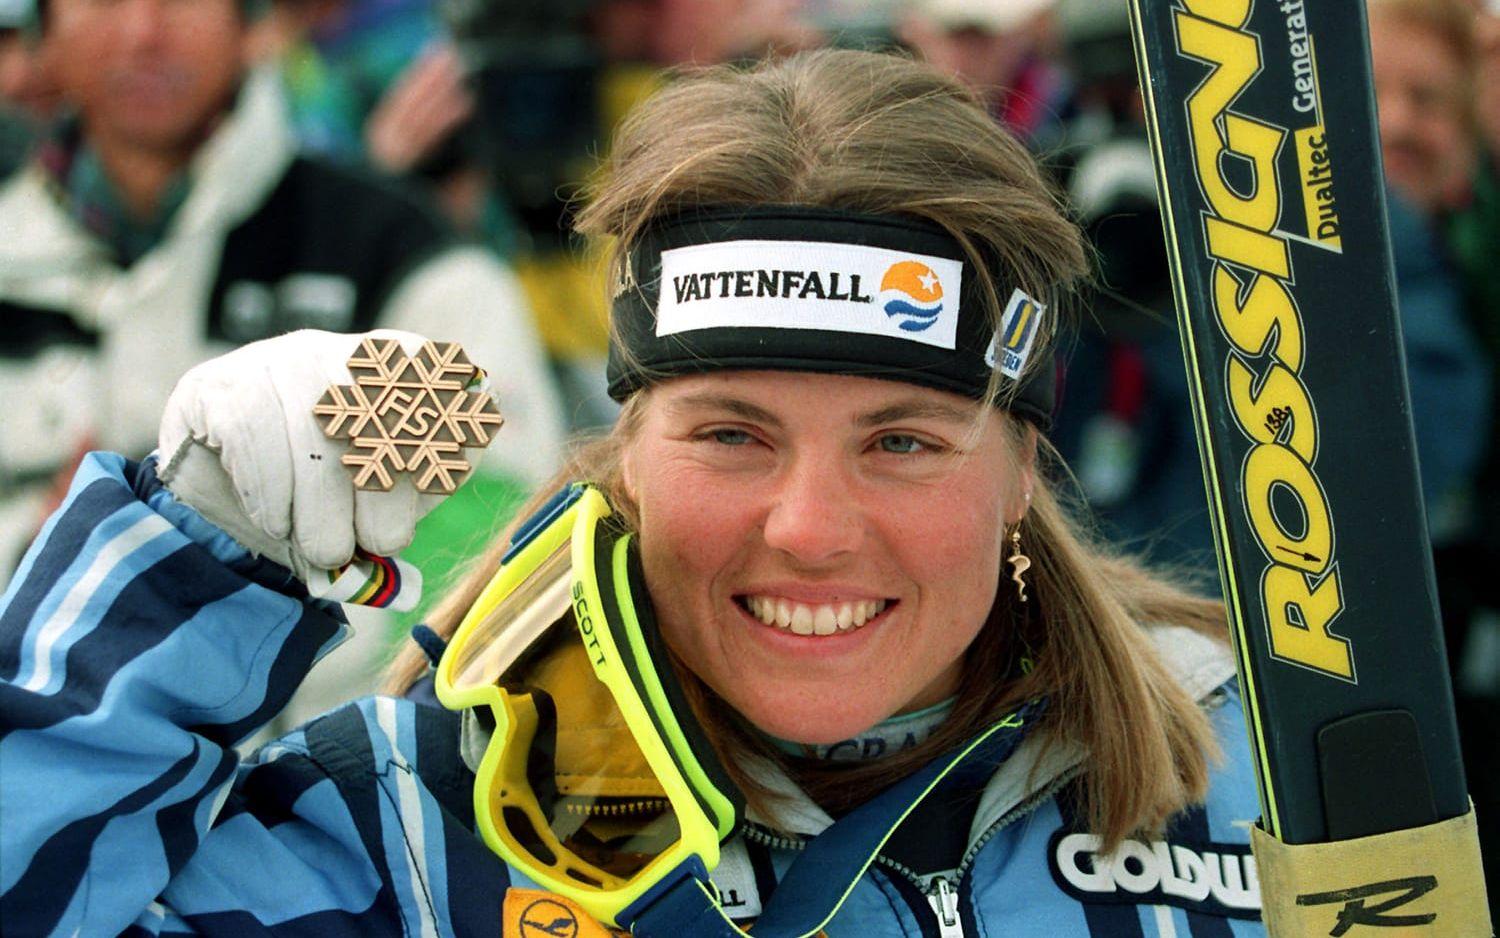 1997 tog <strong>Pernilla Wiberg</strong> ännu en medalj, när hon blev tvåa i störtloppet i Sestrieres. Foto: Bildbyrån